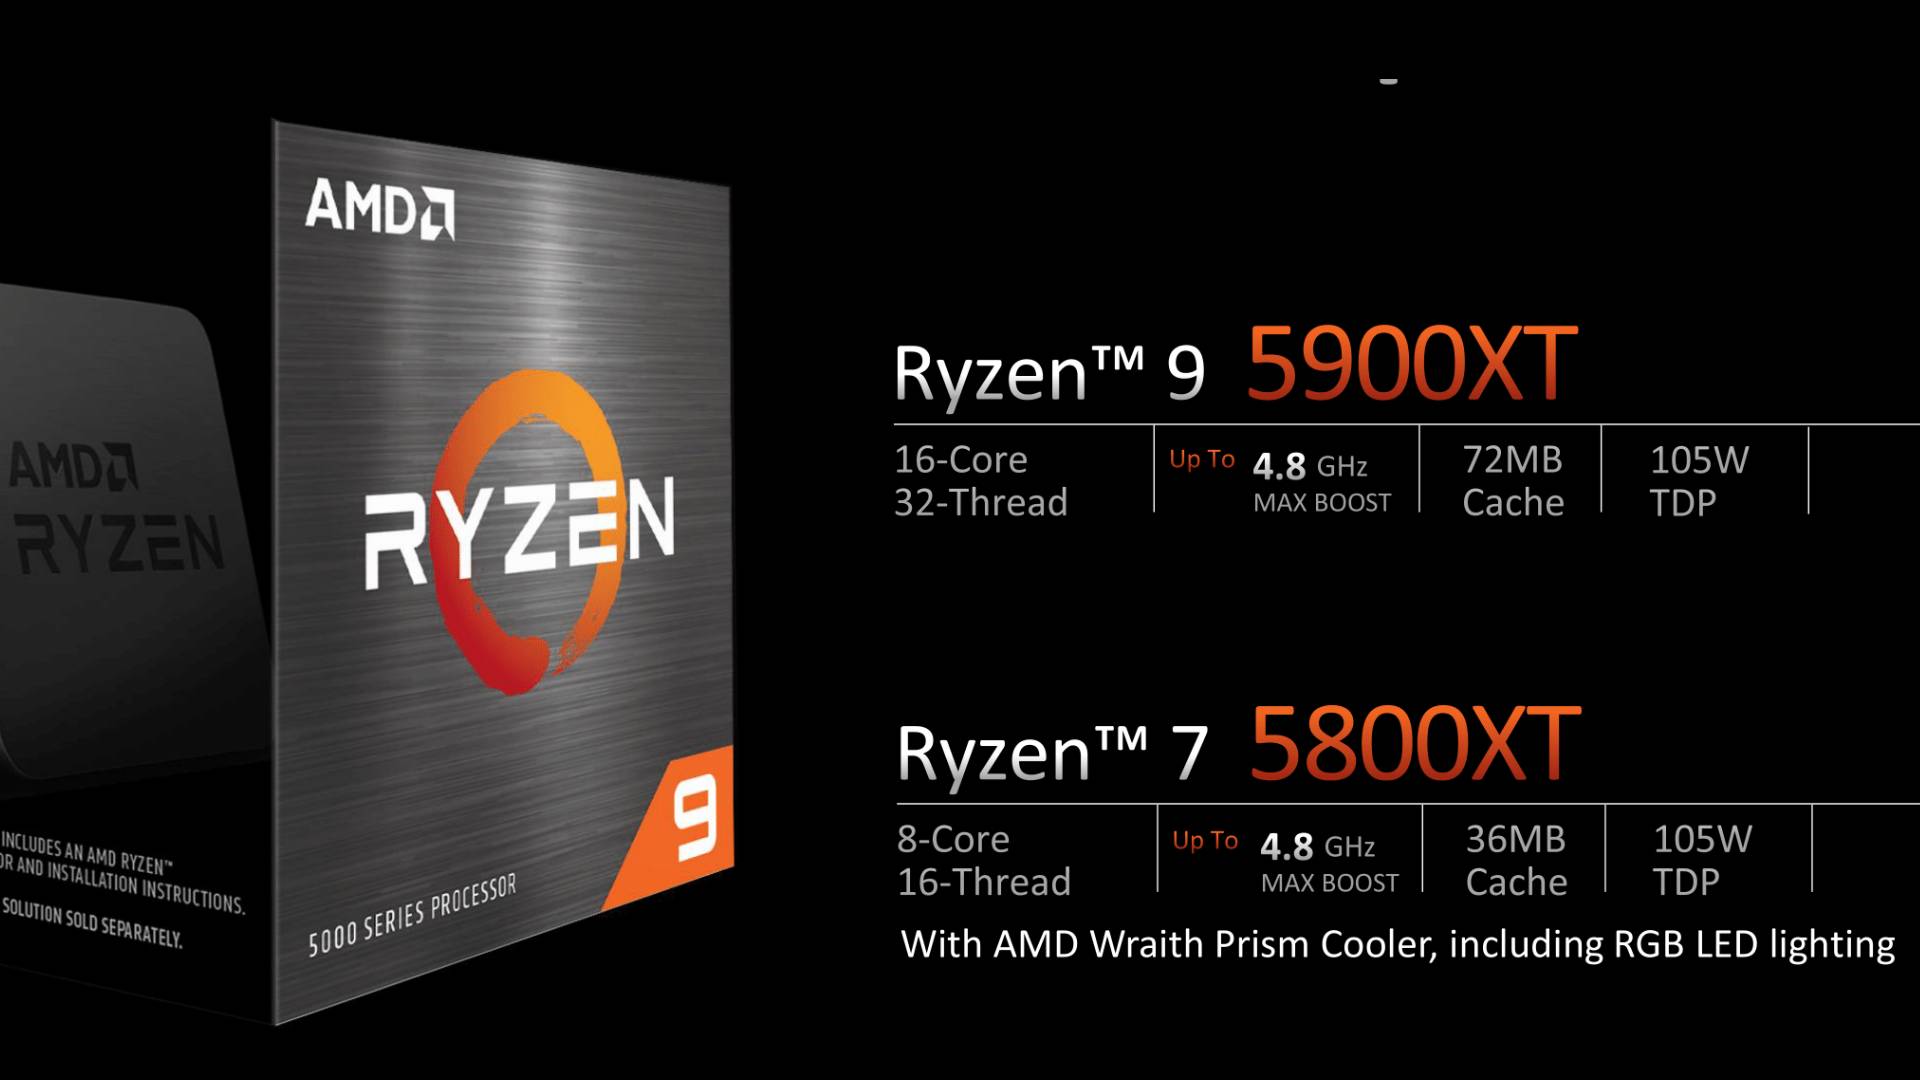 AMD 5000XT CPUs